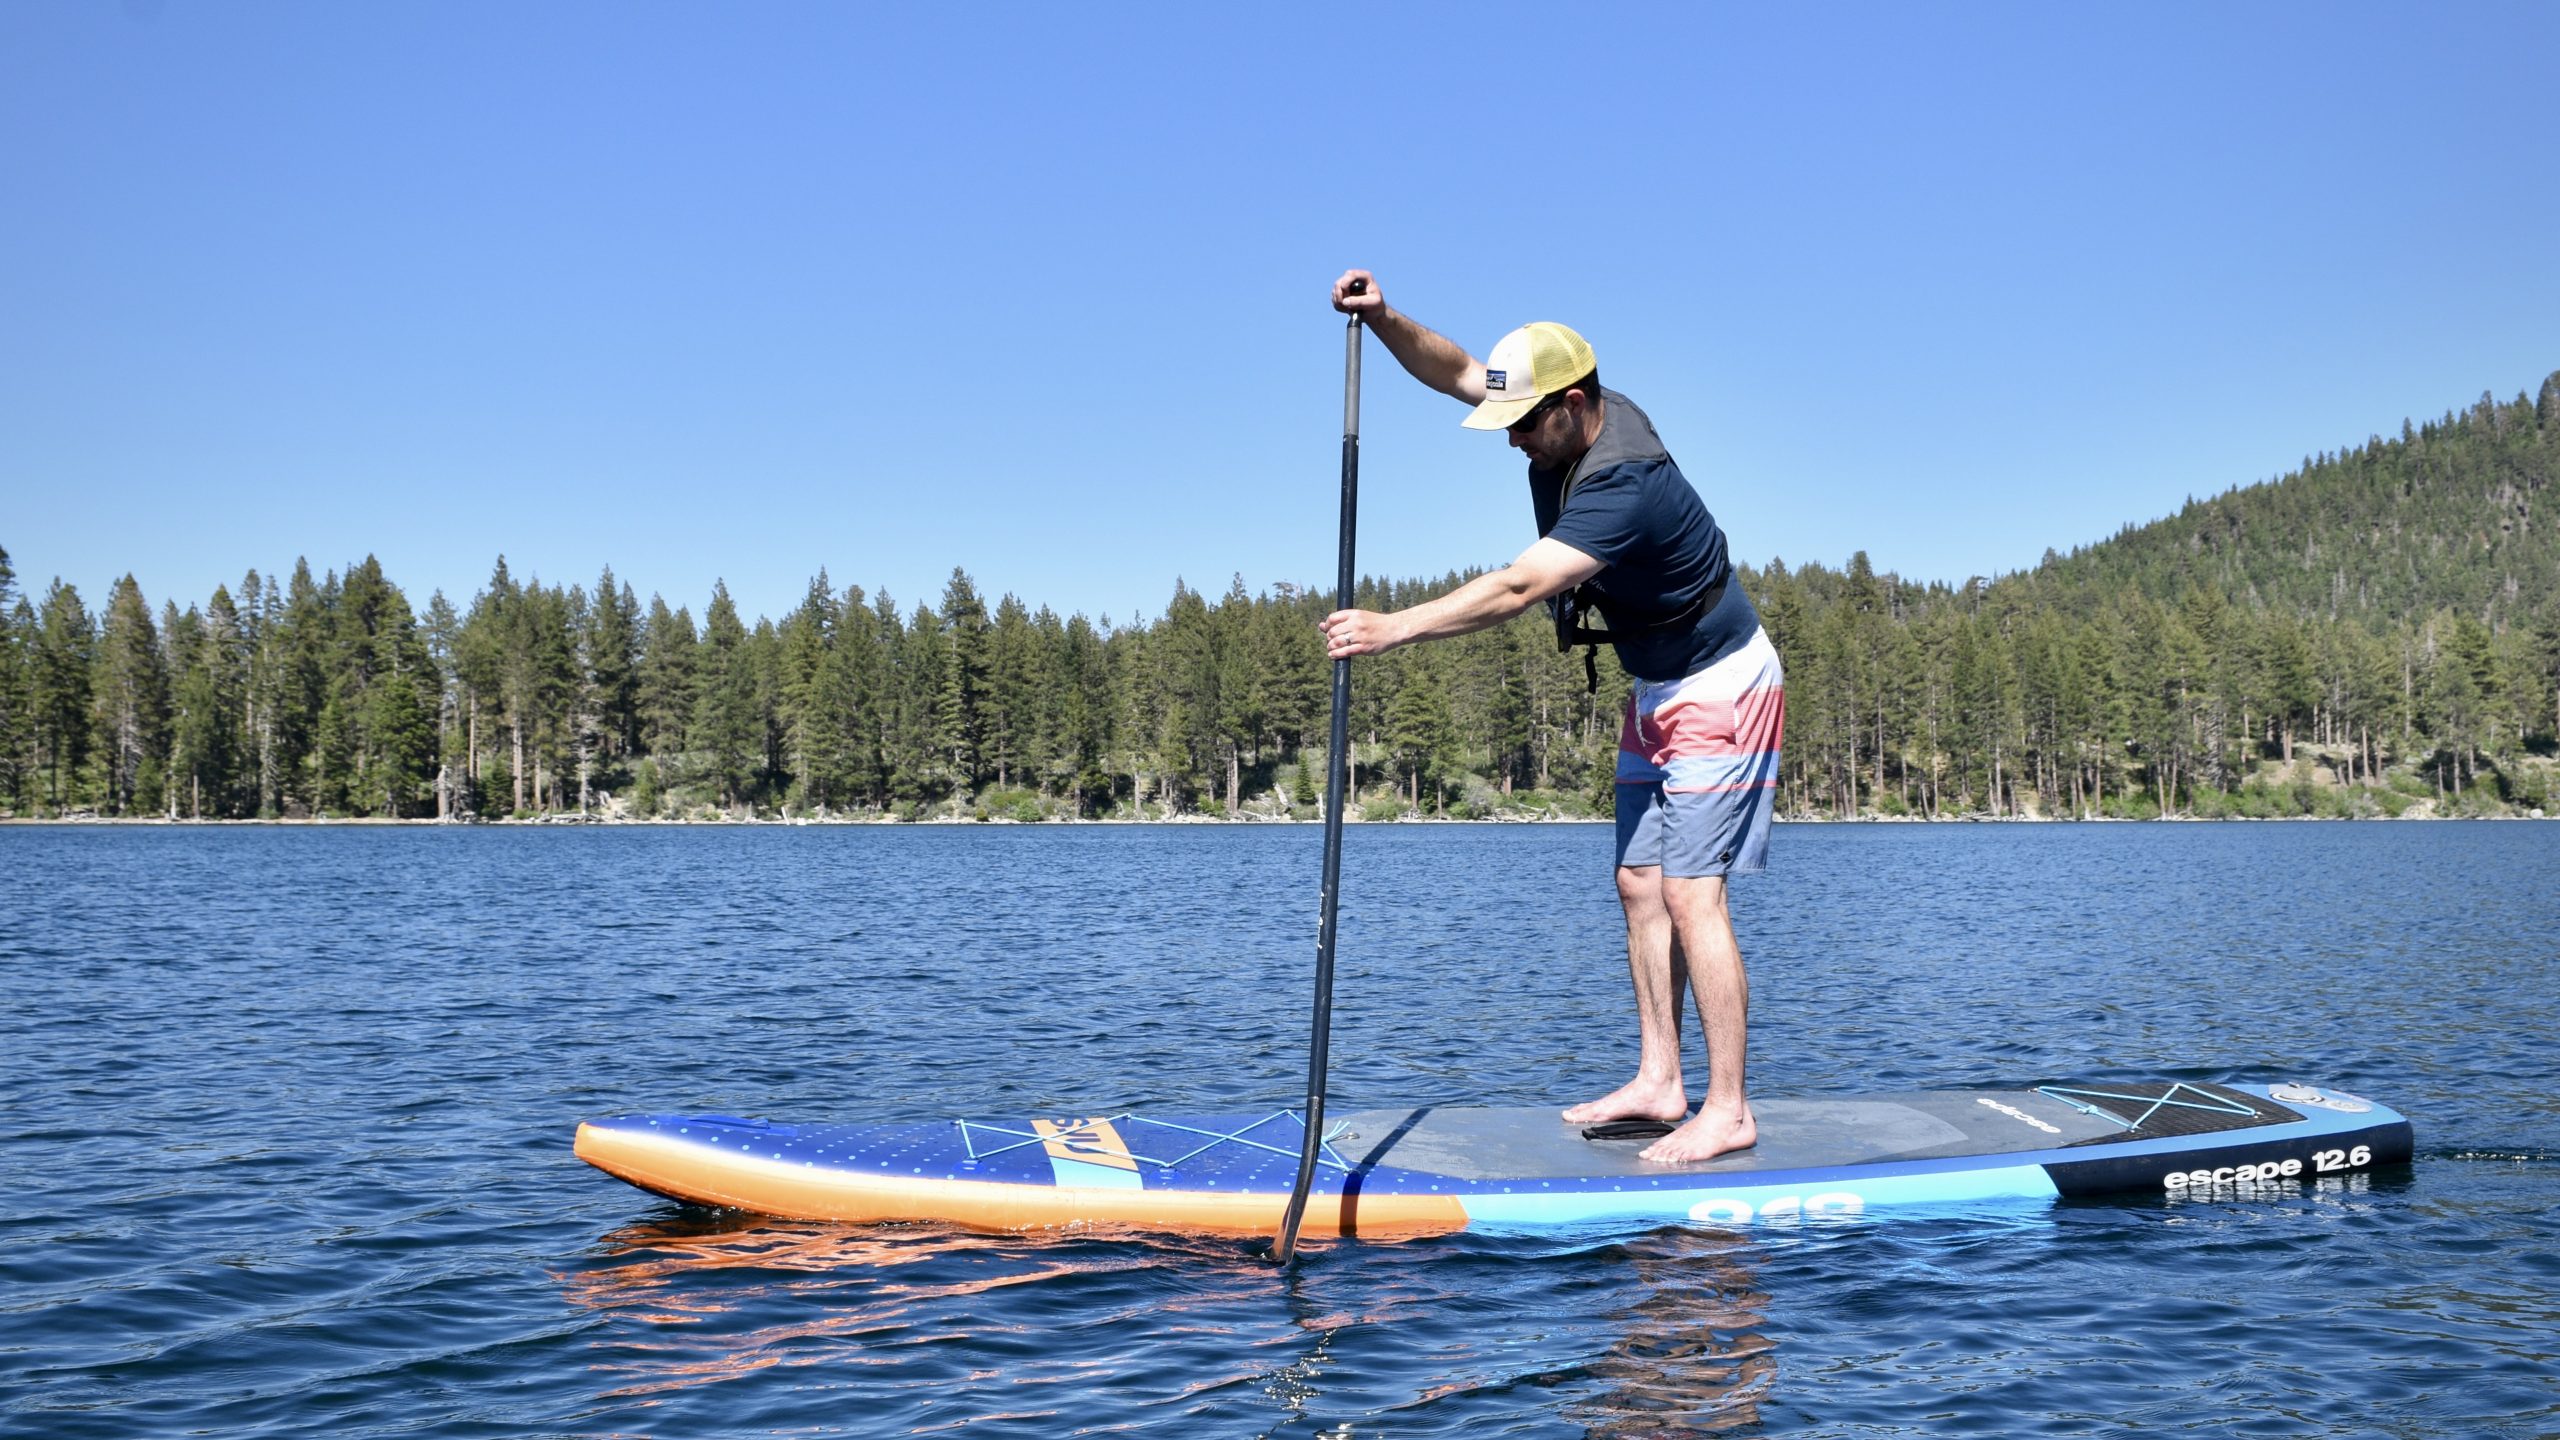 2021秋冬新作】 Retrospec Weekender 10' Inflatable Stand Up Paddleboard iSUP  Bundle with Carrying Case, Piece Adjustable Aluminum Paddle, Removable  Fins, Pump, an